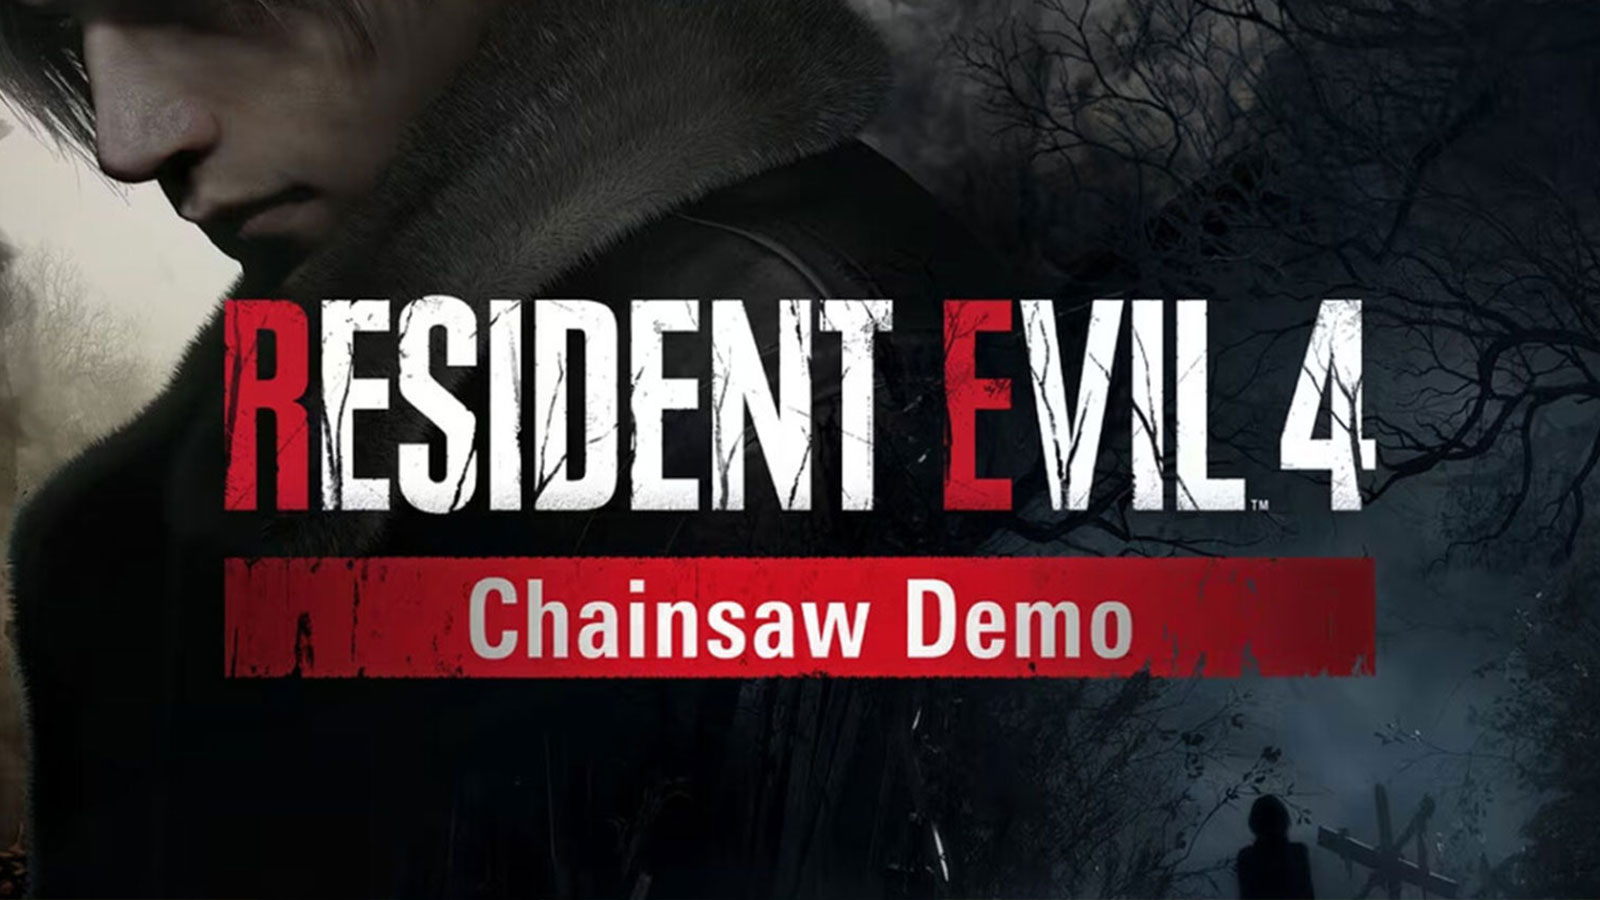 Resident Evil 4 Requisitos Mínimos e Recomendados 2023 - Teste seu